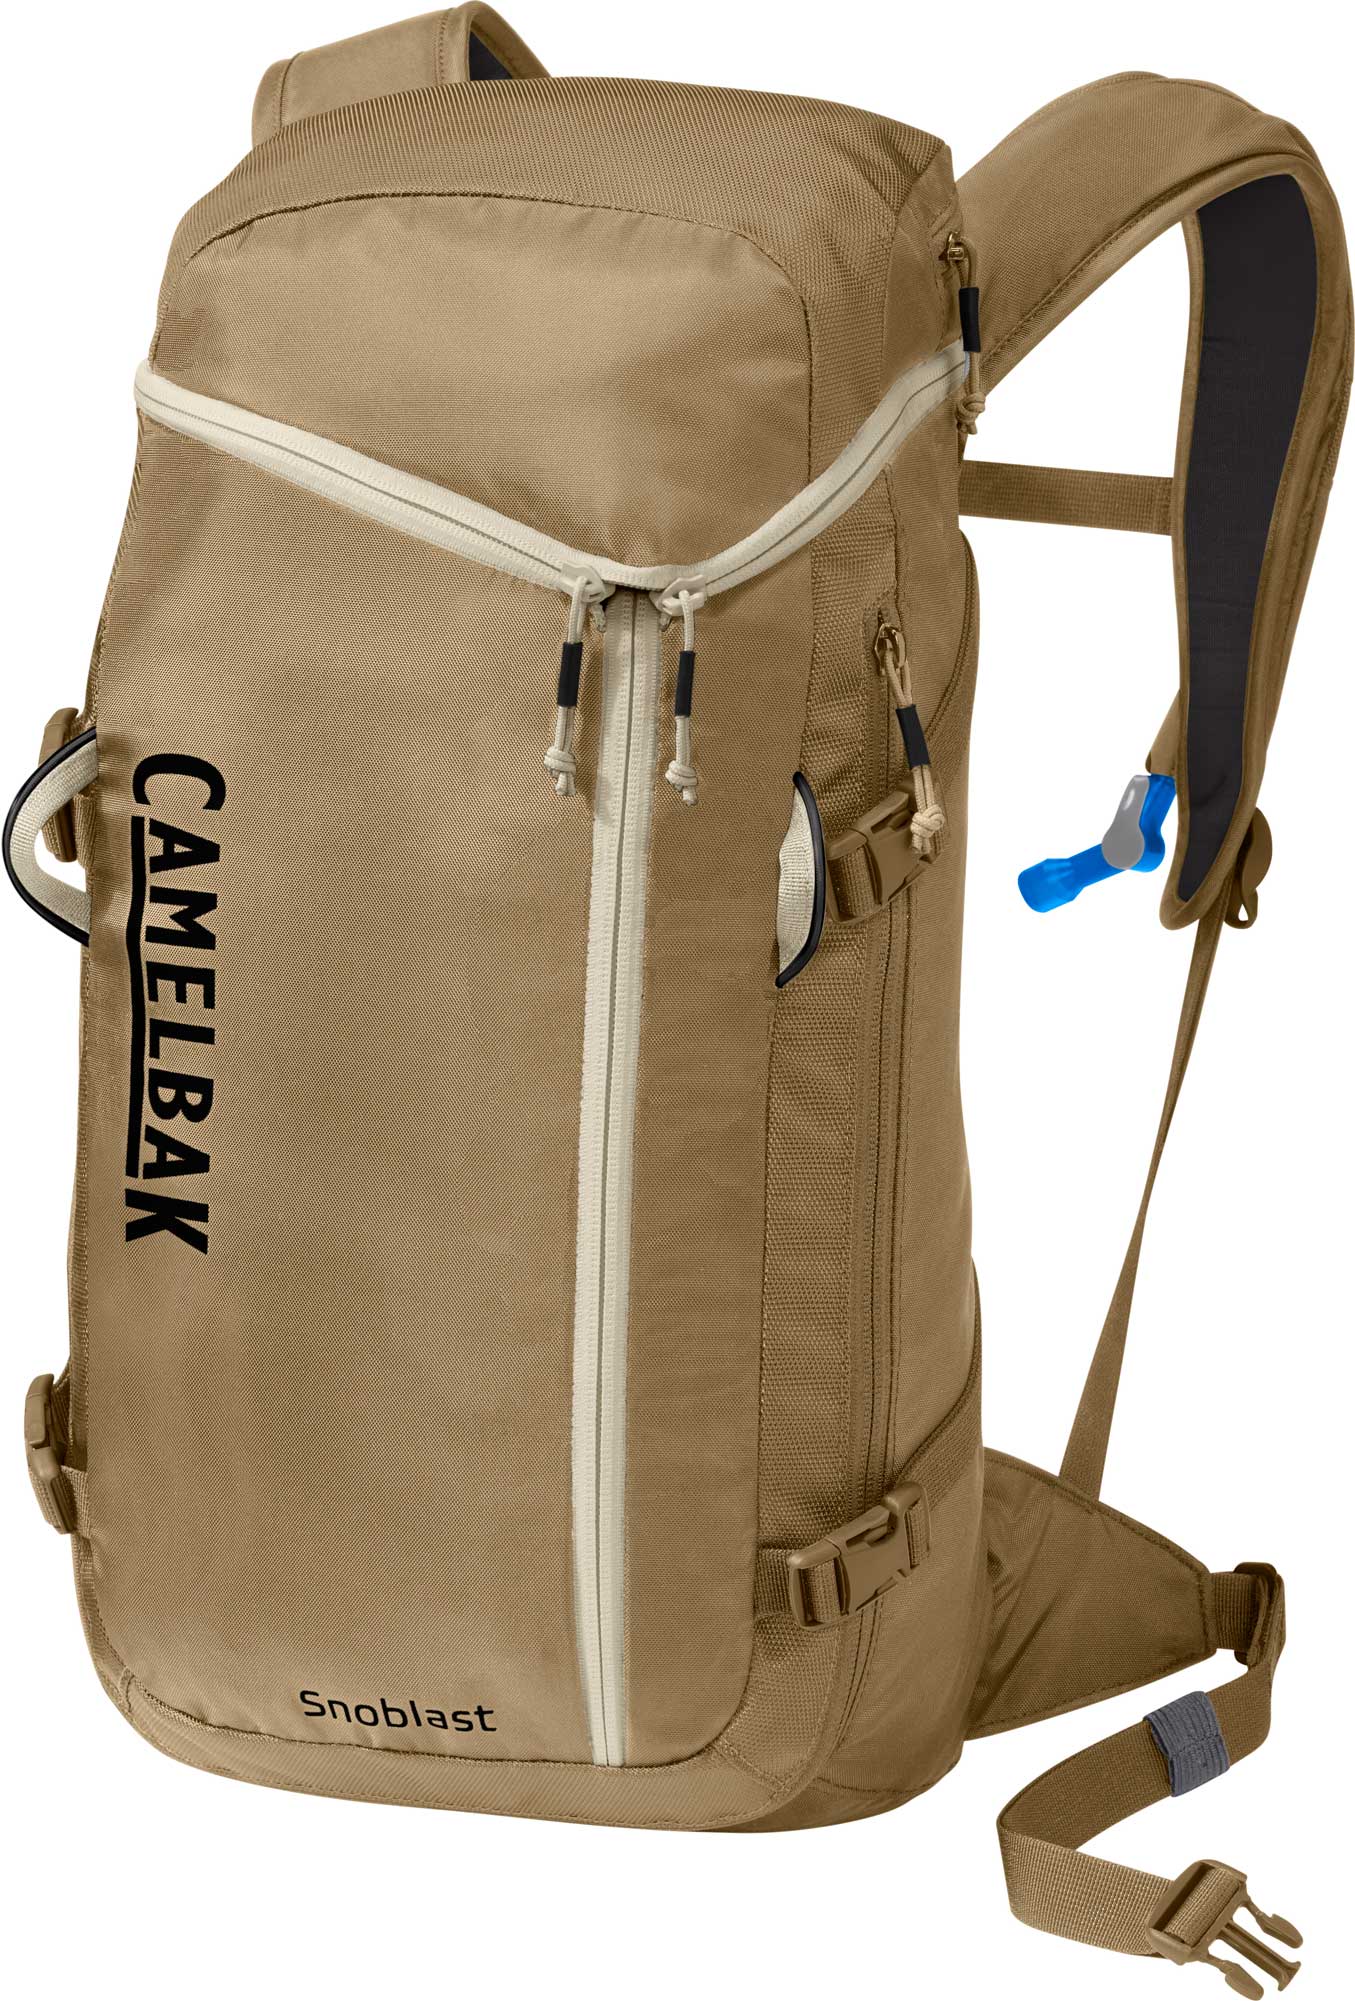 Camelbak - Snoblast - Ski Touring backpack